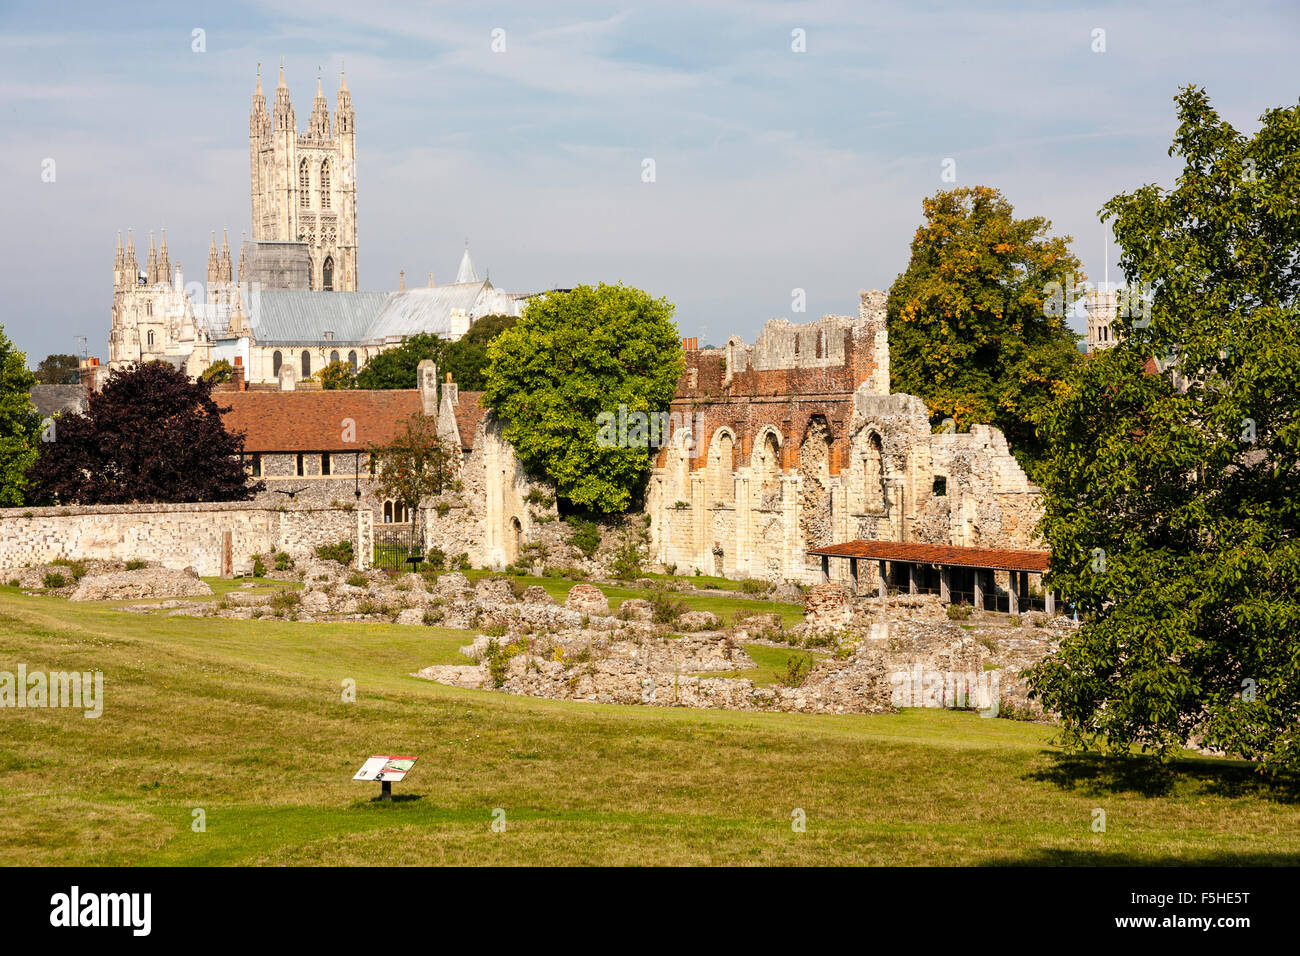 St Augustines Abtei. Die Ruinen des 12. Jahrhunderts Kirchenschiff Wand und Gebäude mit der Kathedrale von Canterbury im Hintergrund. Tagsüber. Blue Sky. Stockfoto